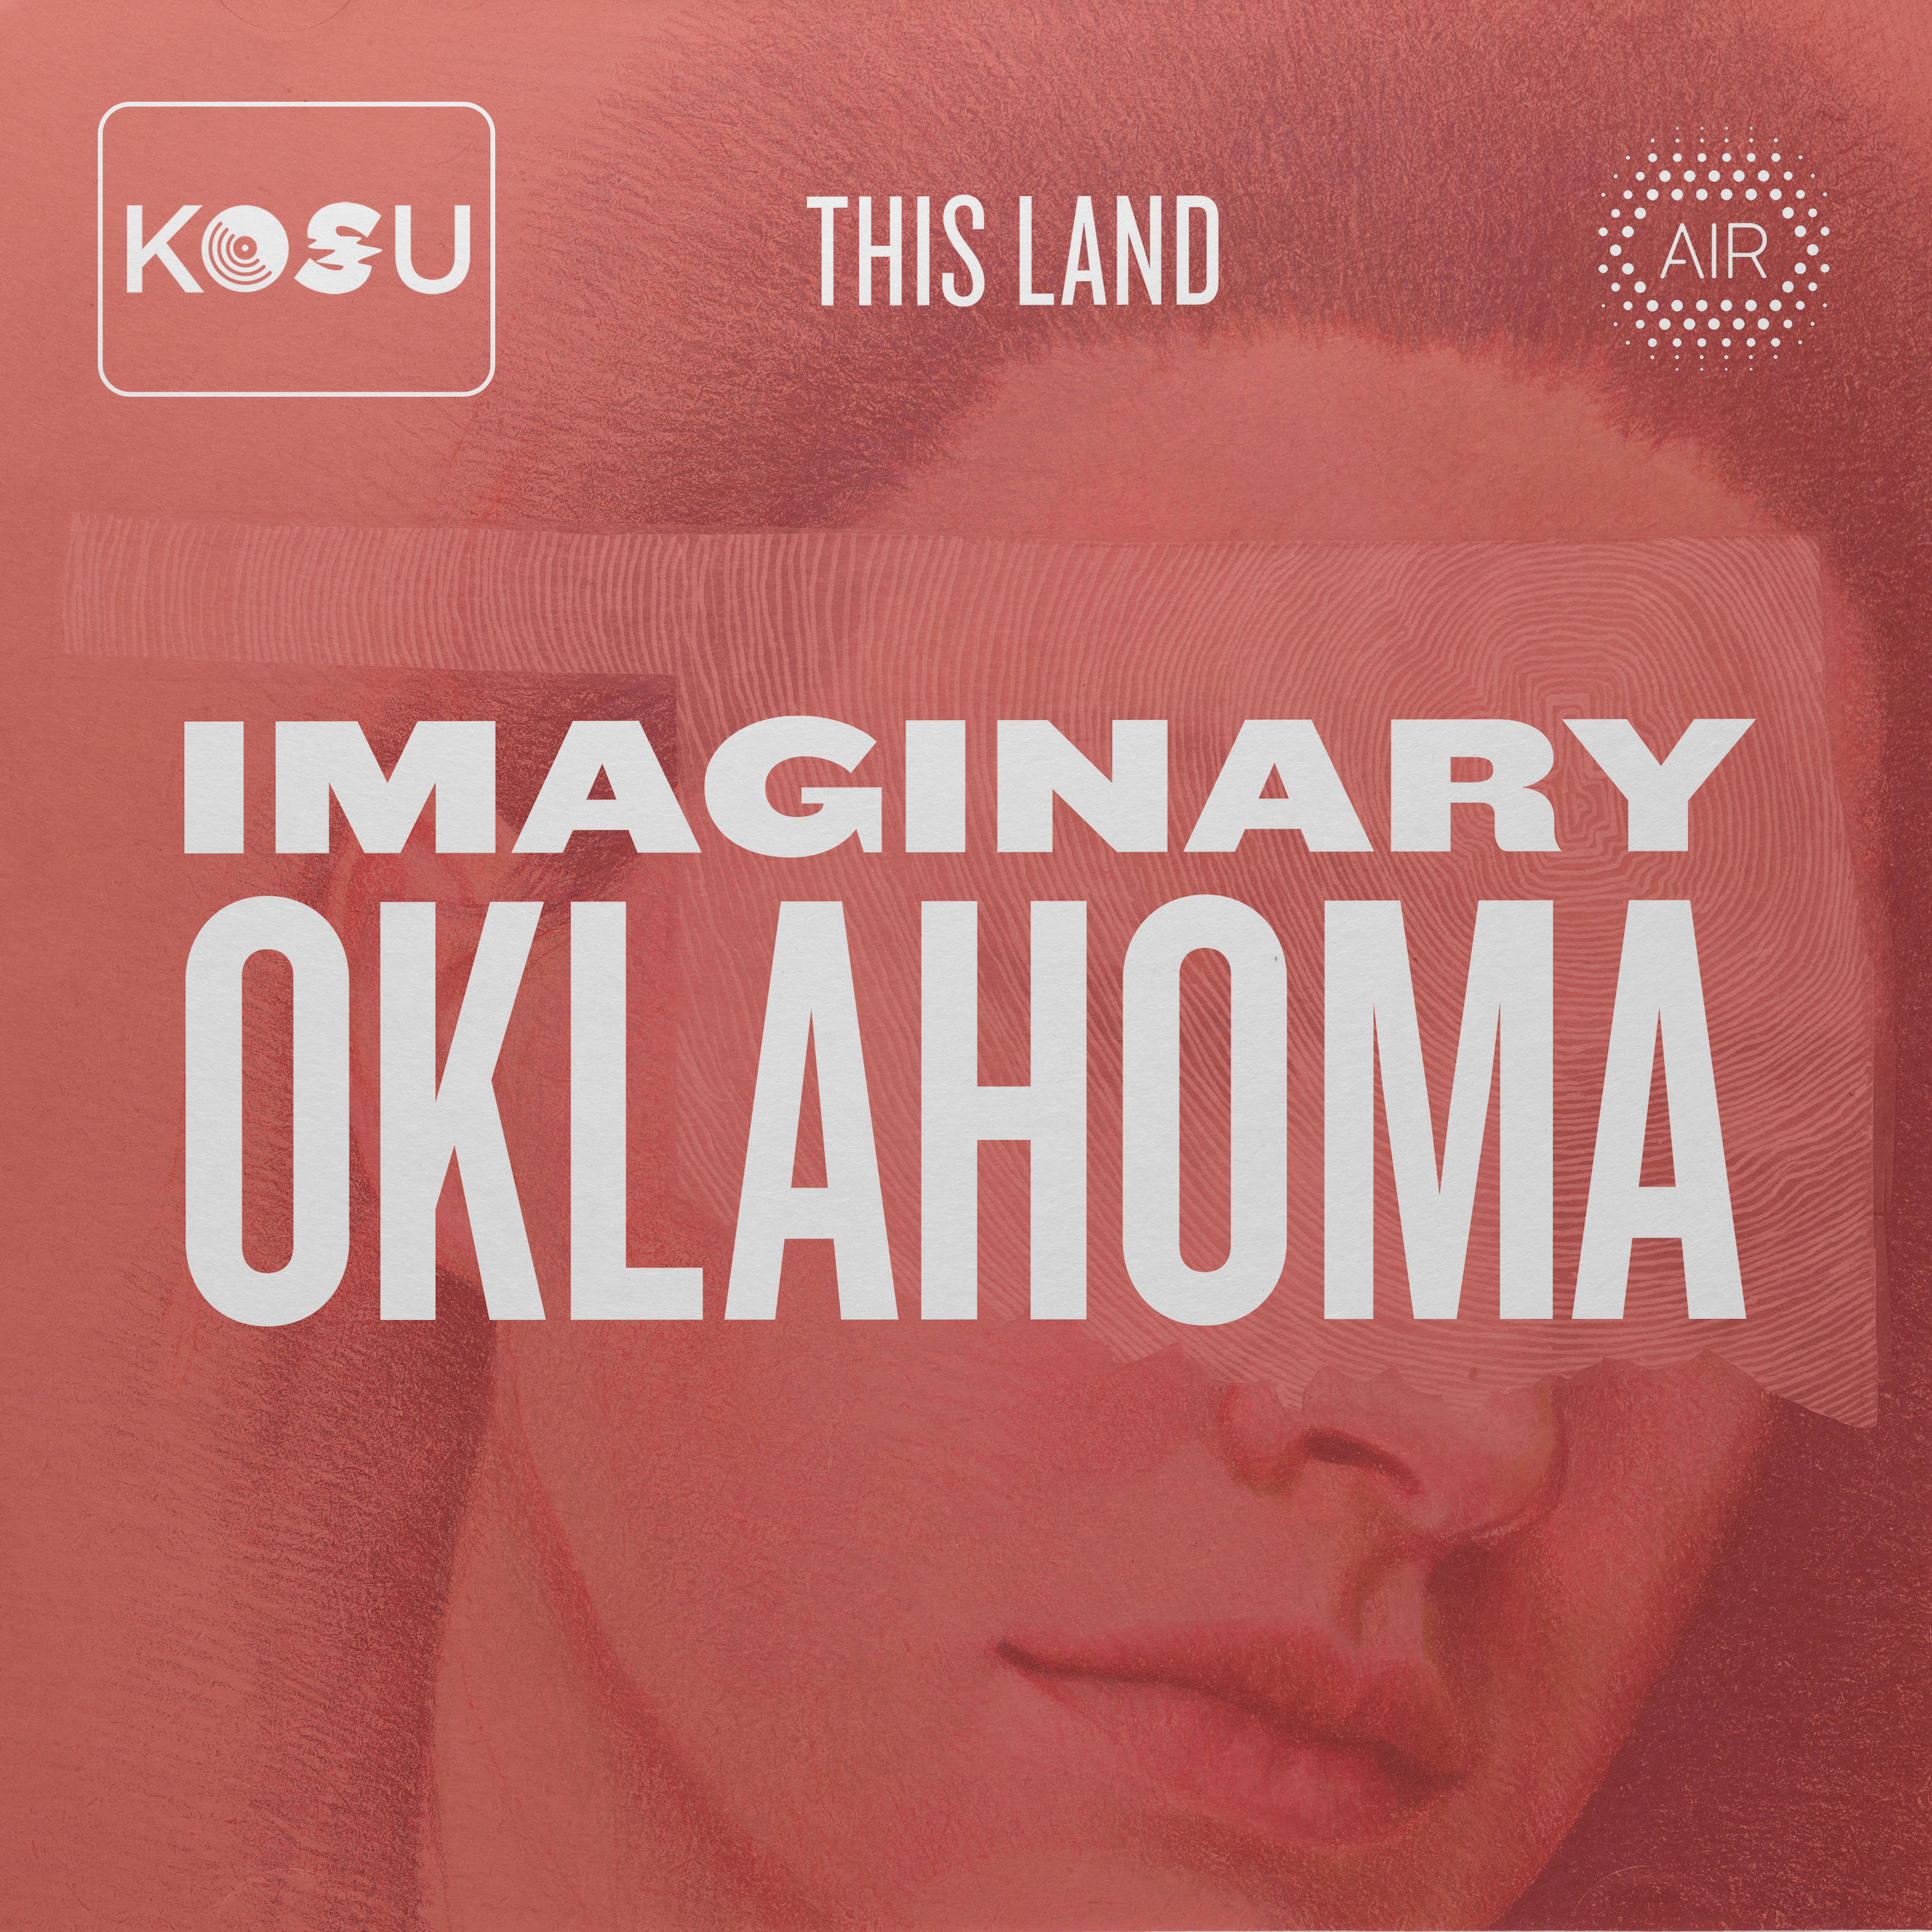 Show artwork for Imaginary Oklahoma